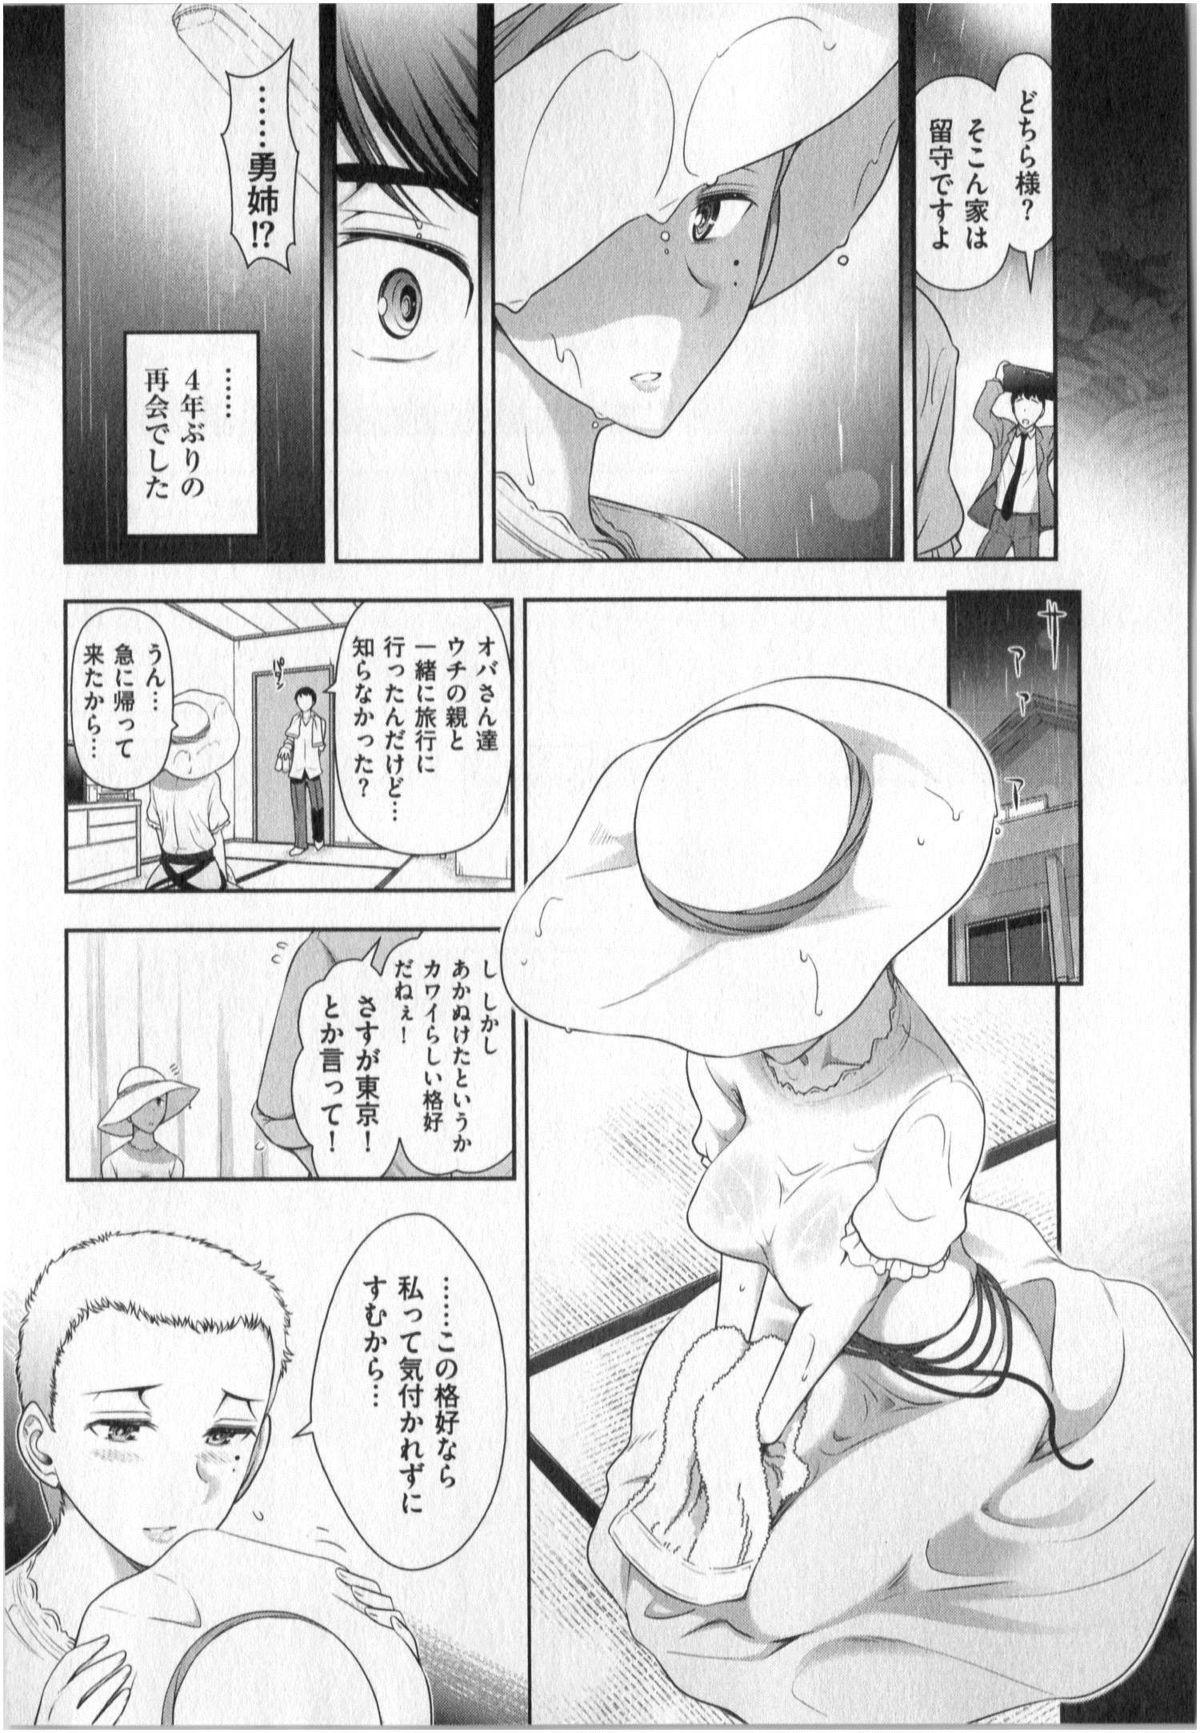 Yonimo Ecchi na Toshidensetsu vol. 01 91